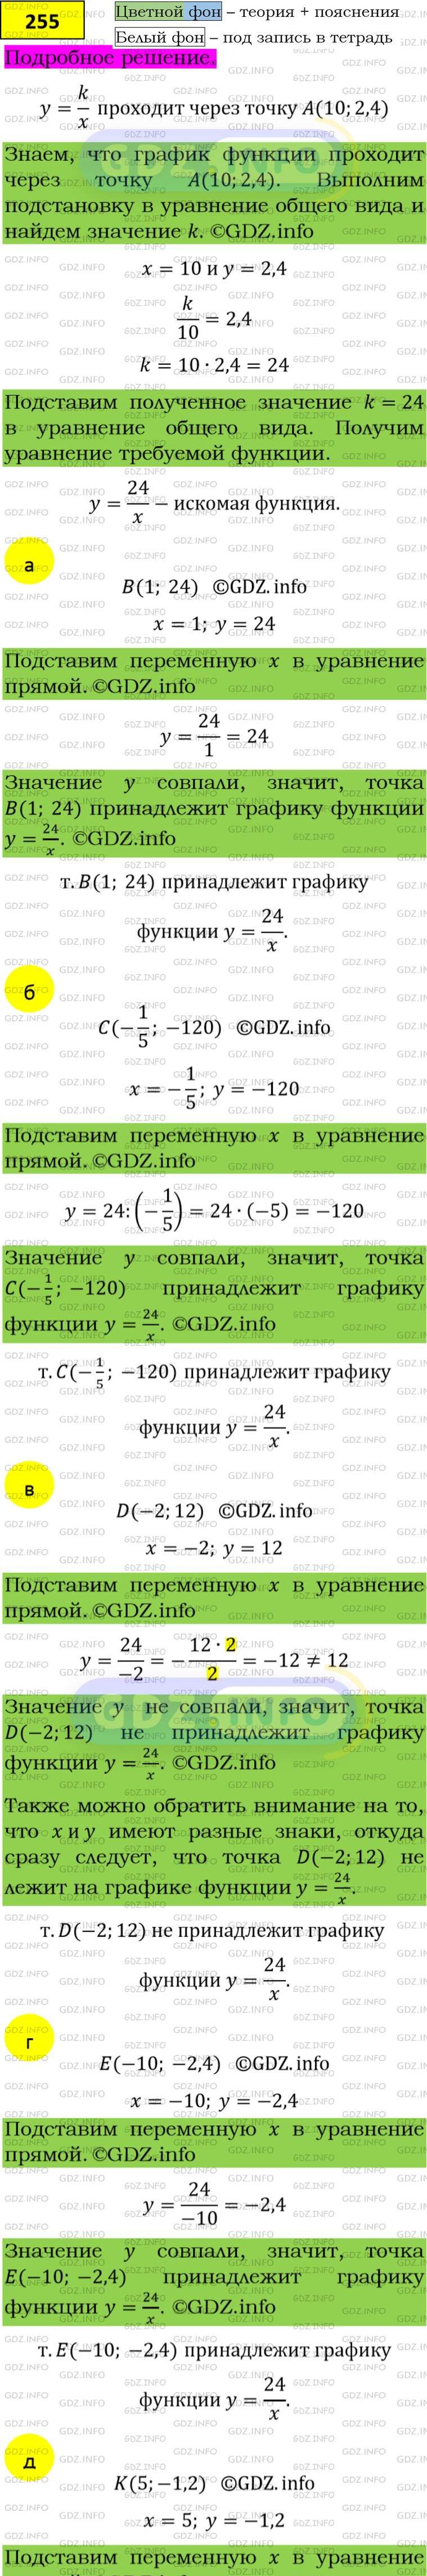 Фото подробного решения: Номер задания №255 из ГДЗ по Алгебре 8 класс: Макарычев Ю.Н.